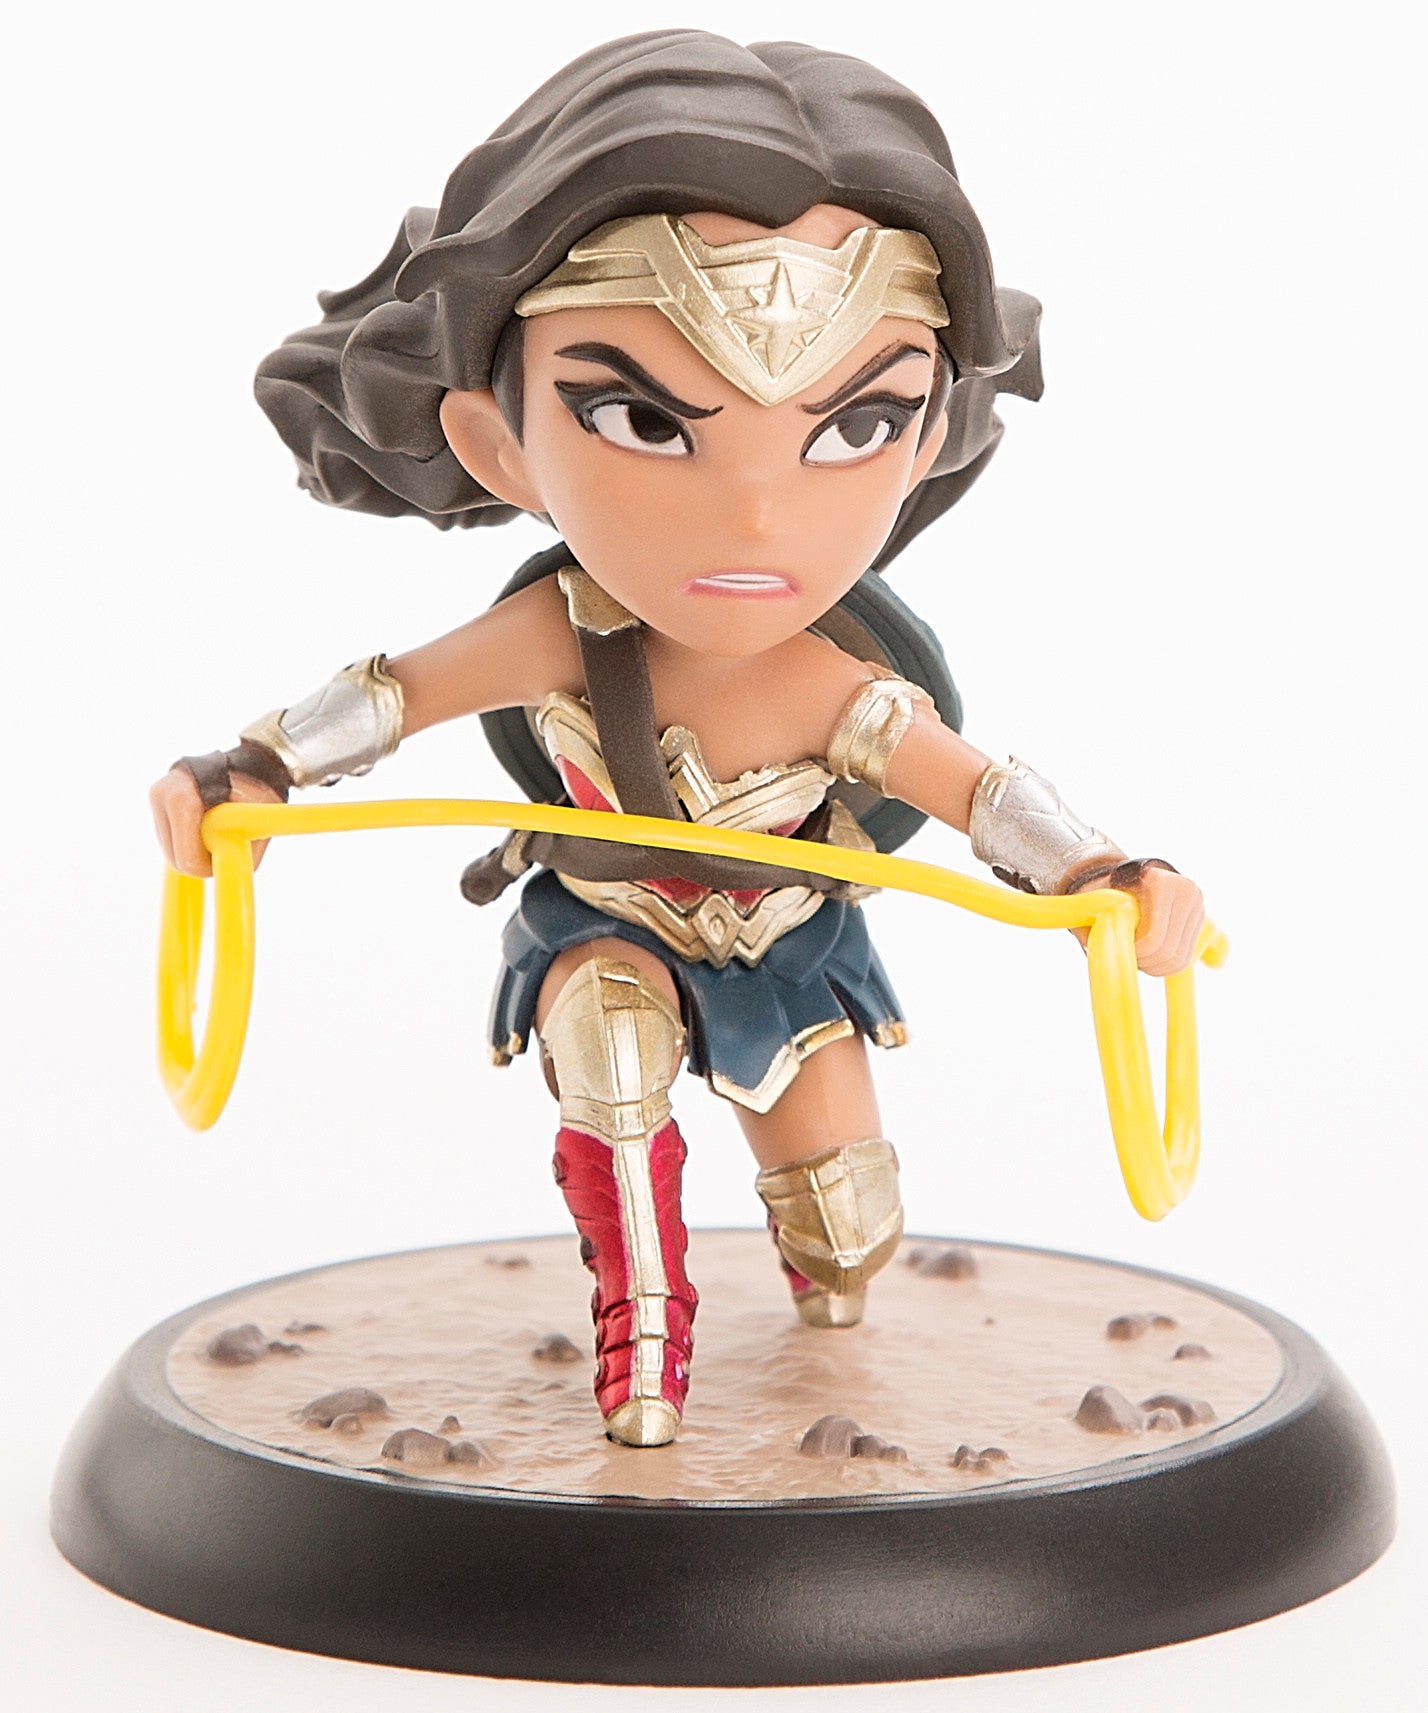 Justice League Wonder Woman Q-FIG Figure